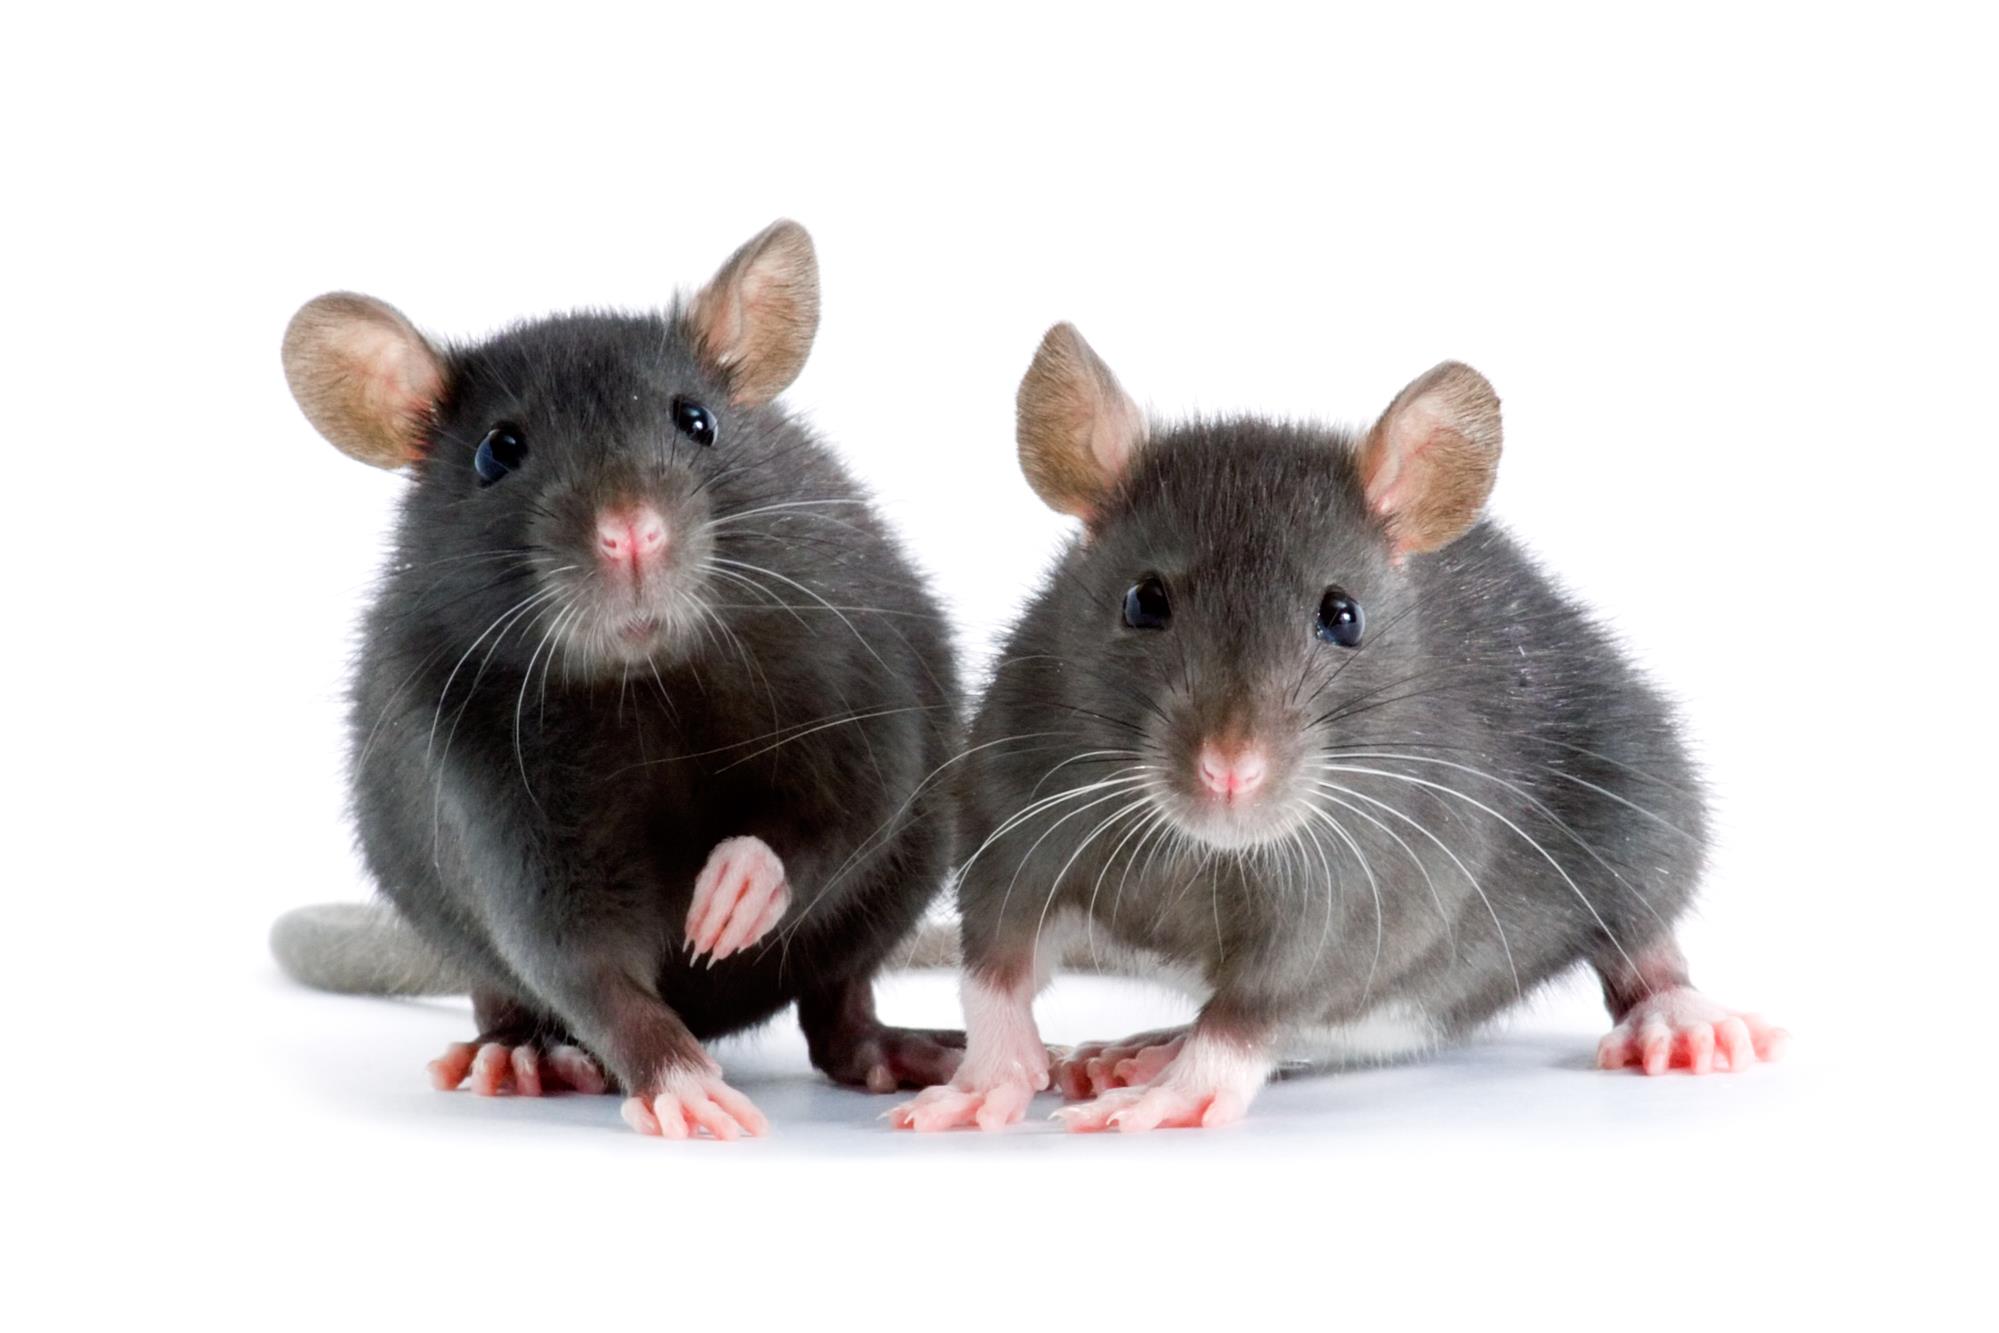 Pest exterminators mouse and rat